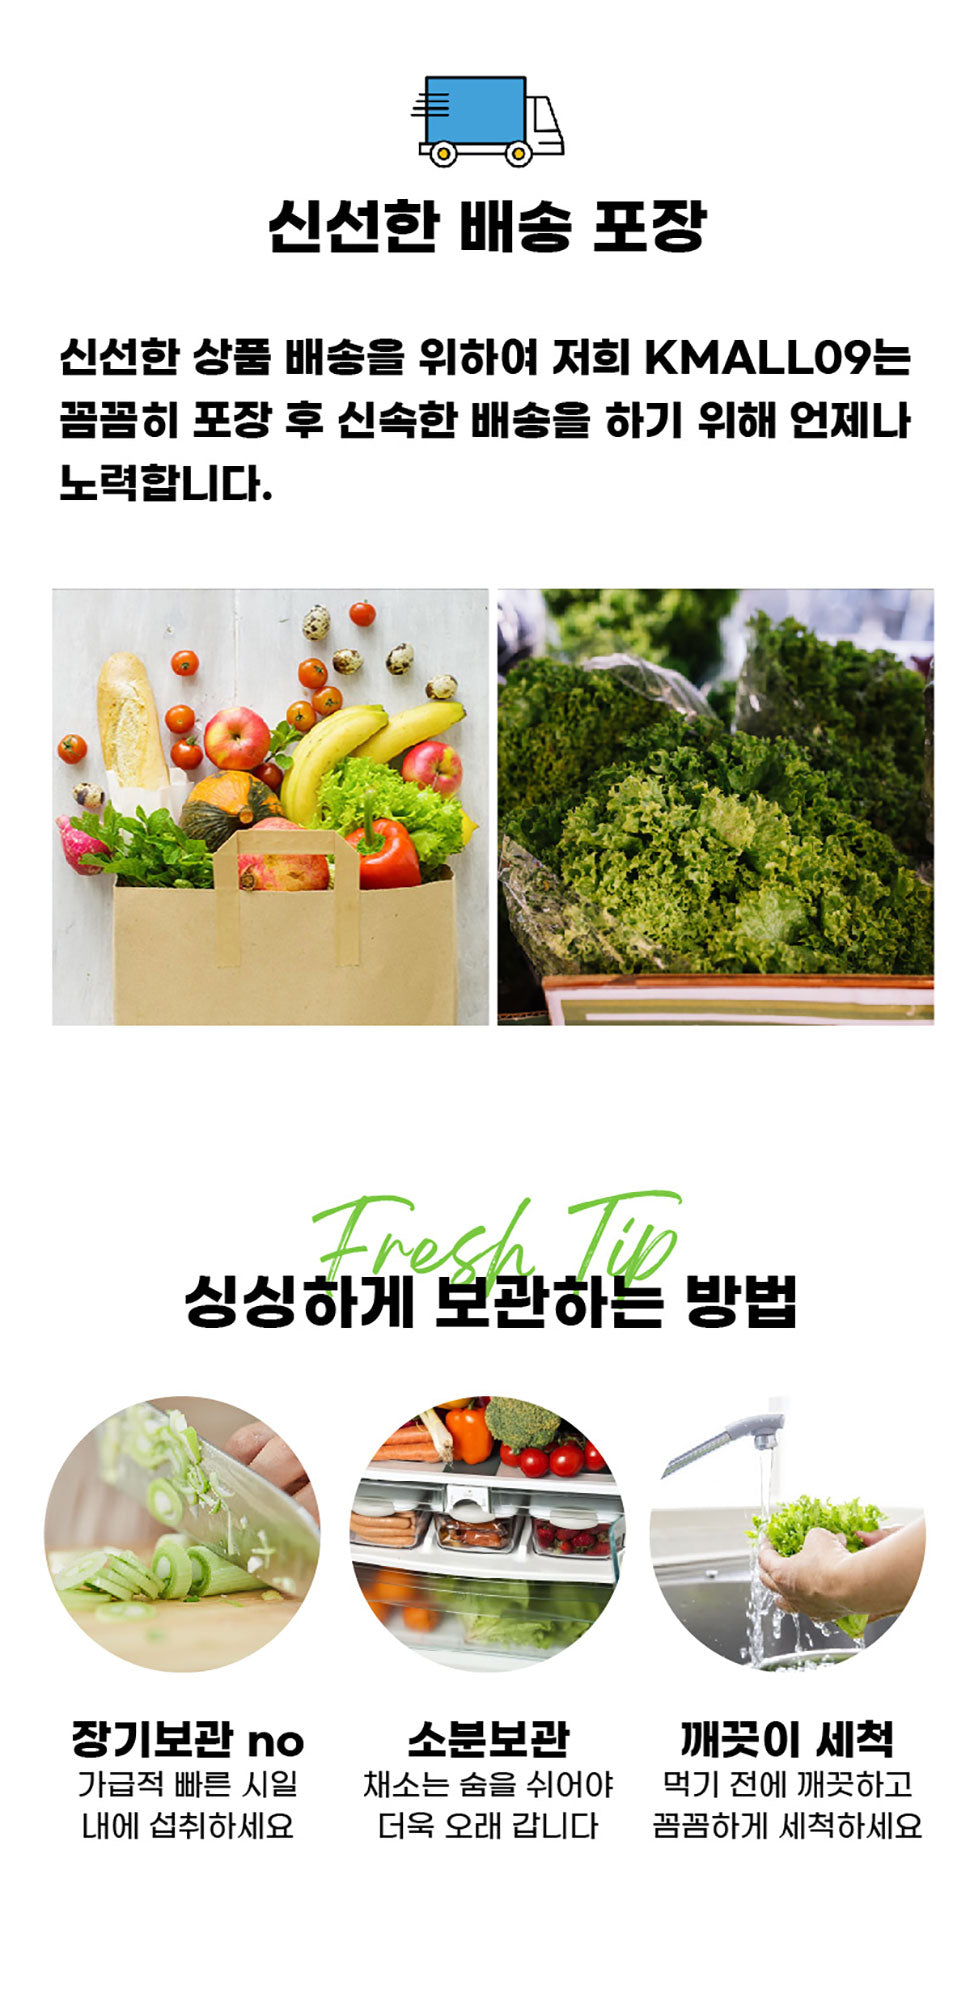 케이몰 09 공구 중독 한인 호주 온라인 쇼핑 몰 한국 상품 제품 야채 채소 베지테리언 오픈